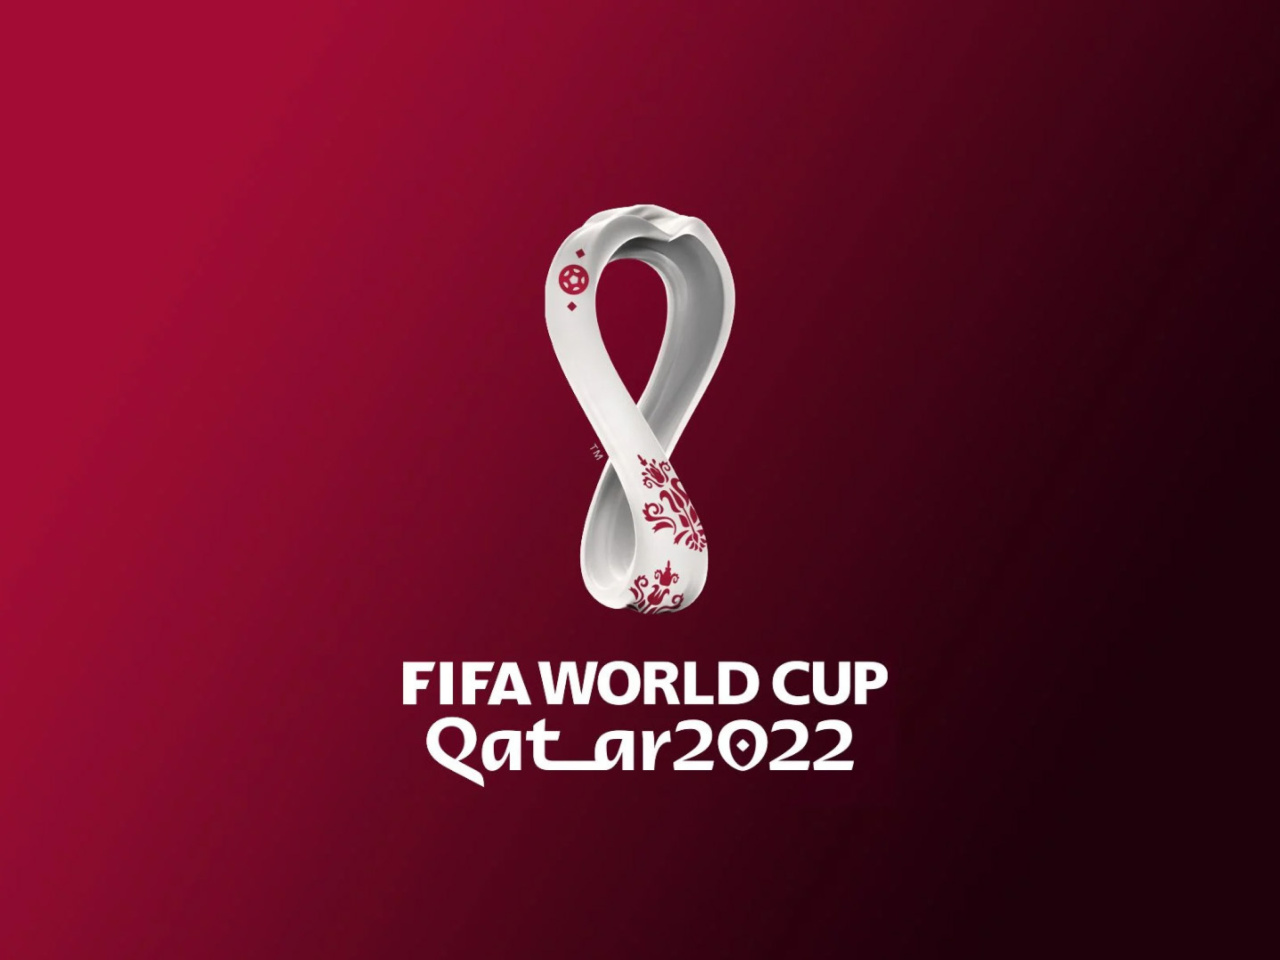 Das World Cup Qatar 2022 Wallpaper 1280x960